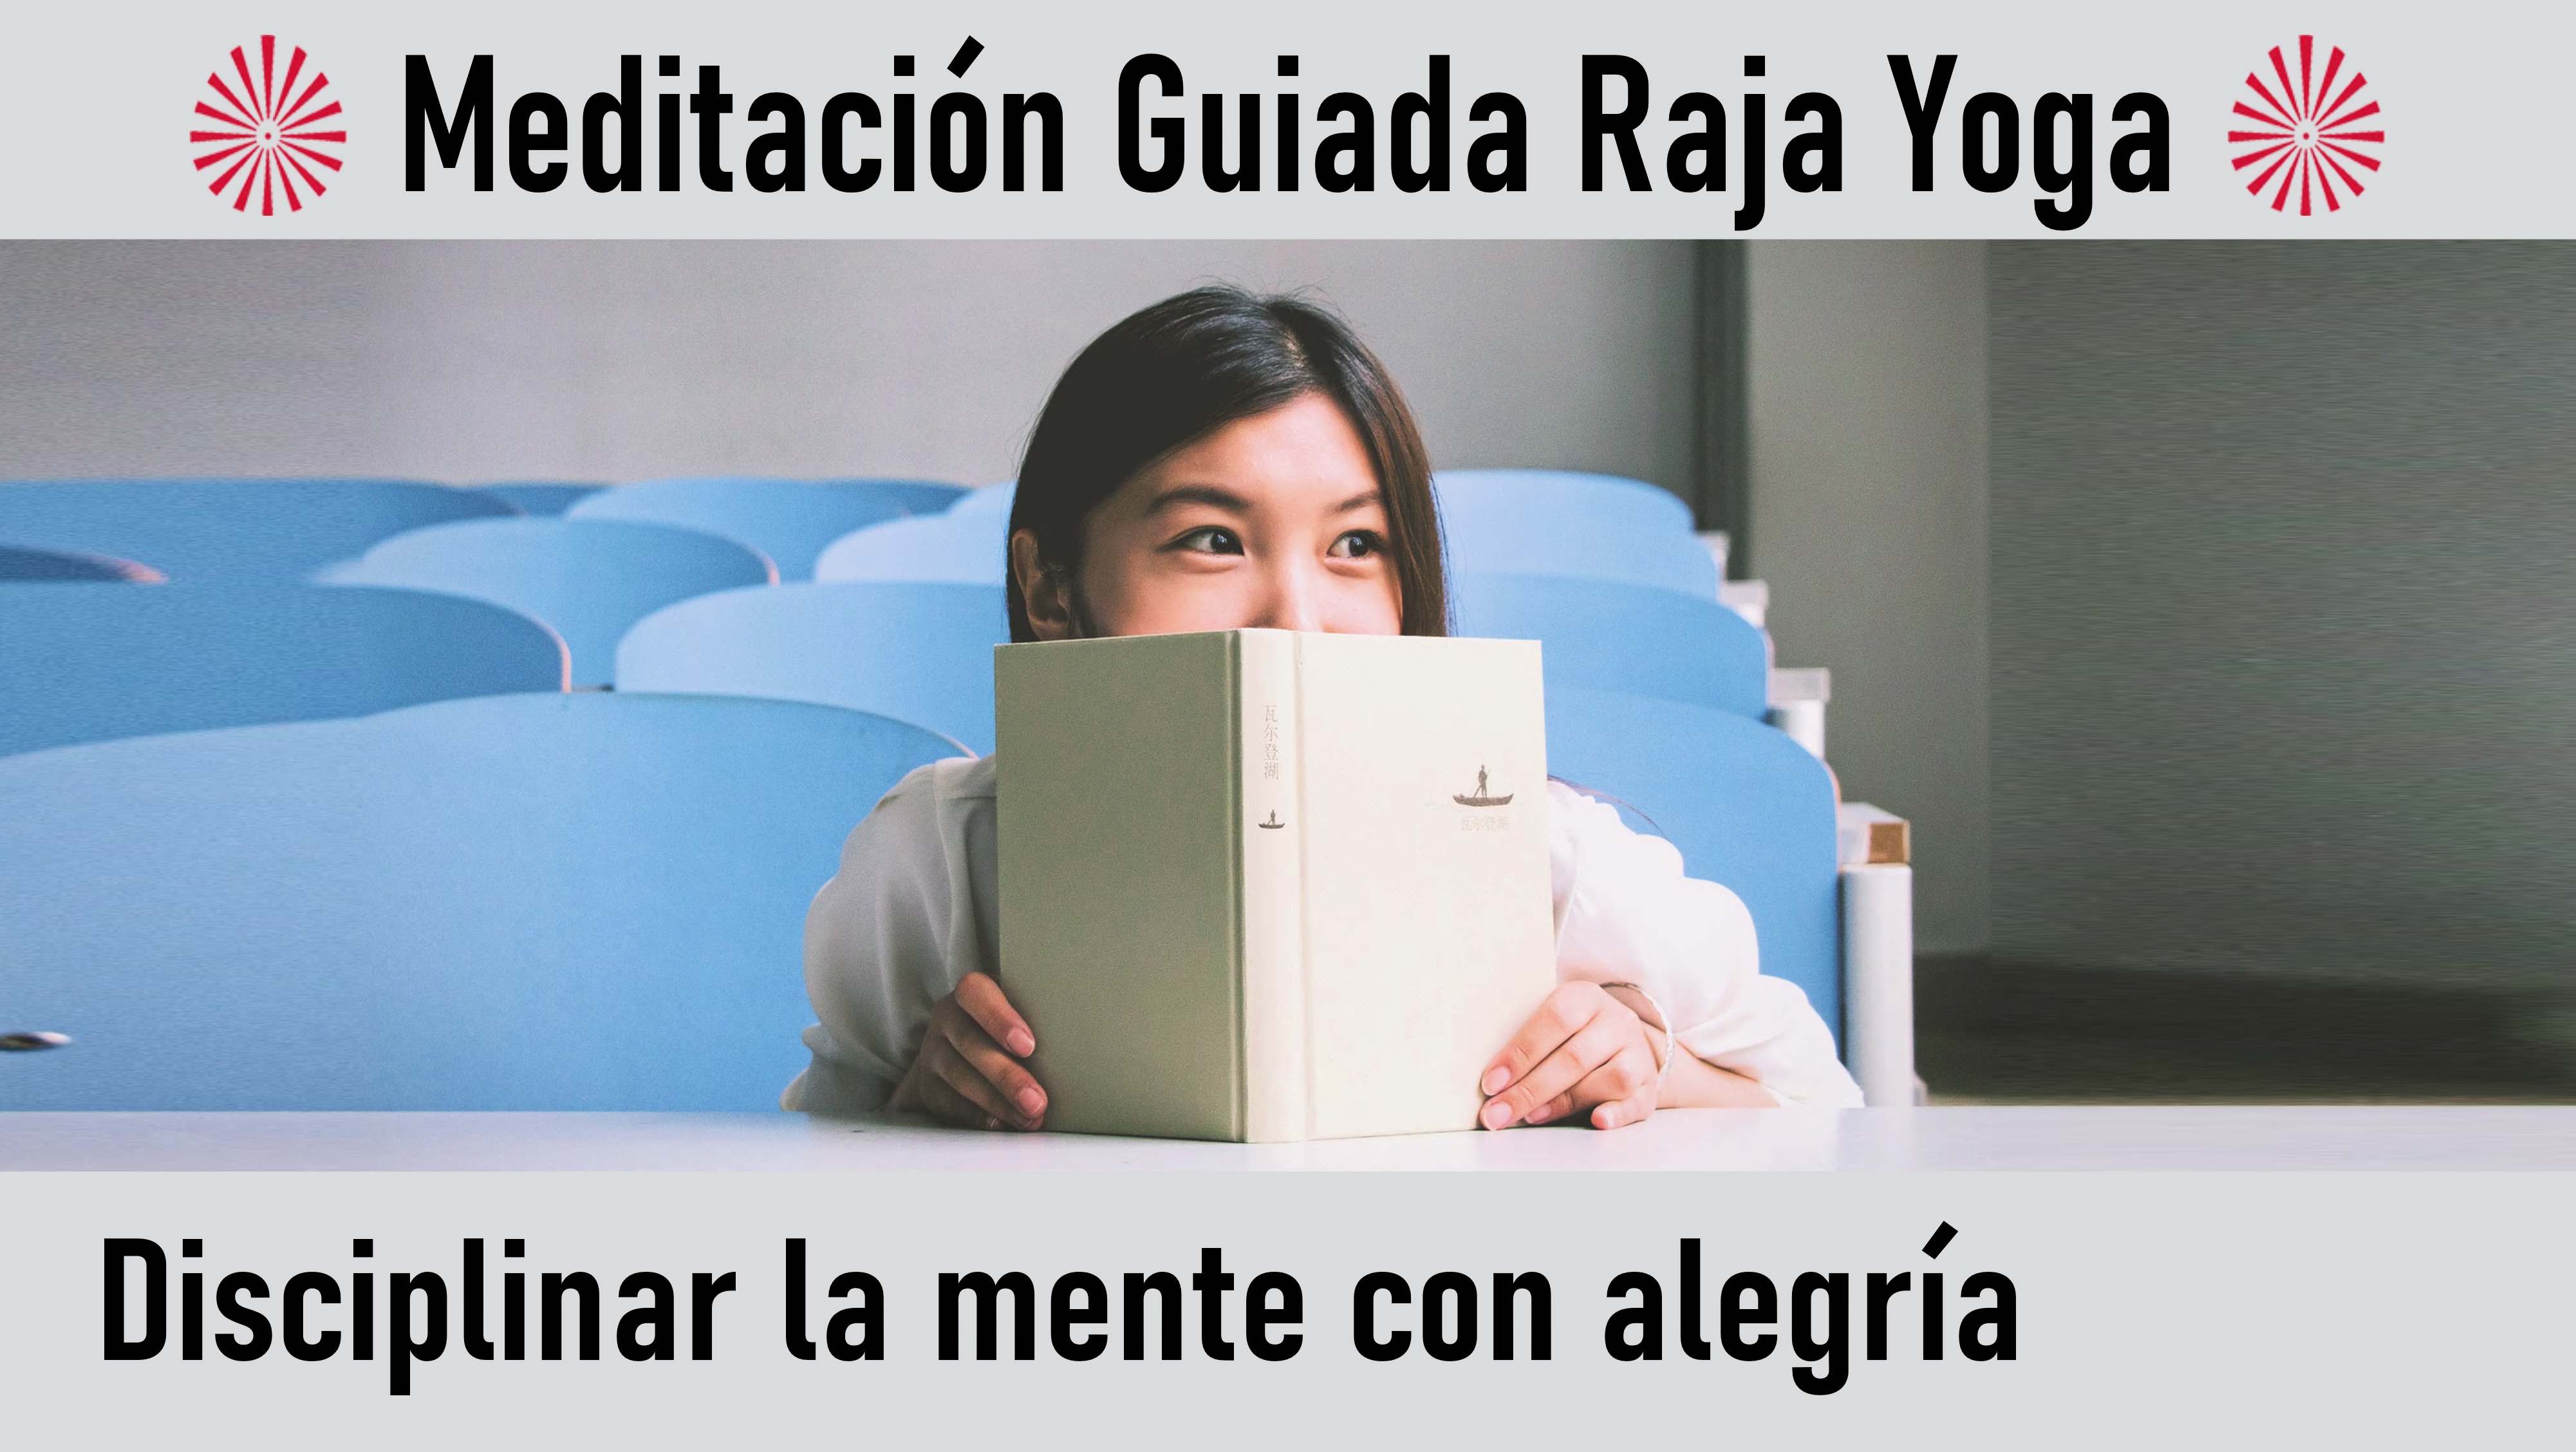 Meditación Raja Yoga: Disciplinar la mente con alegría (22 Agosto 2020) On-line desde Valencia